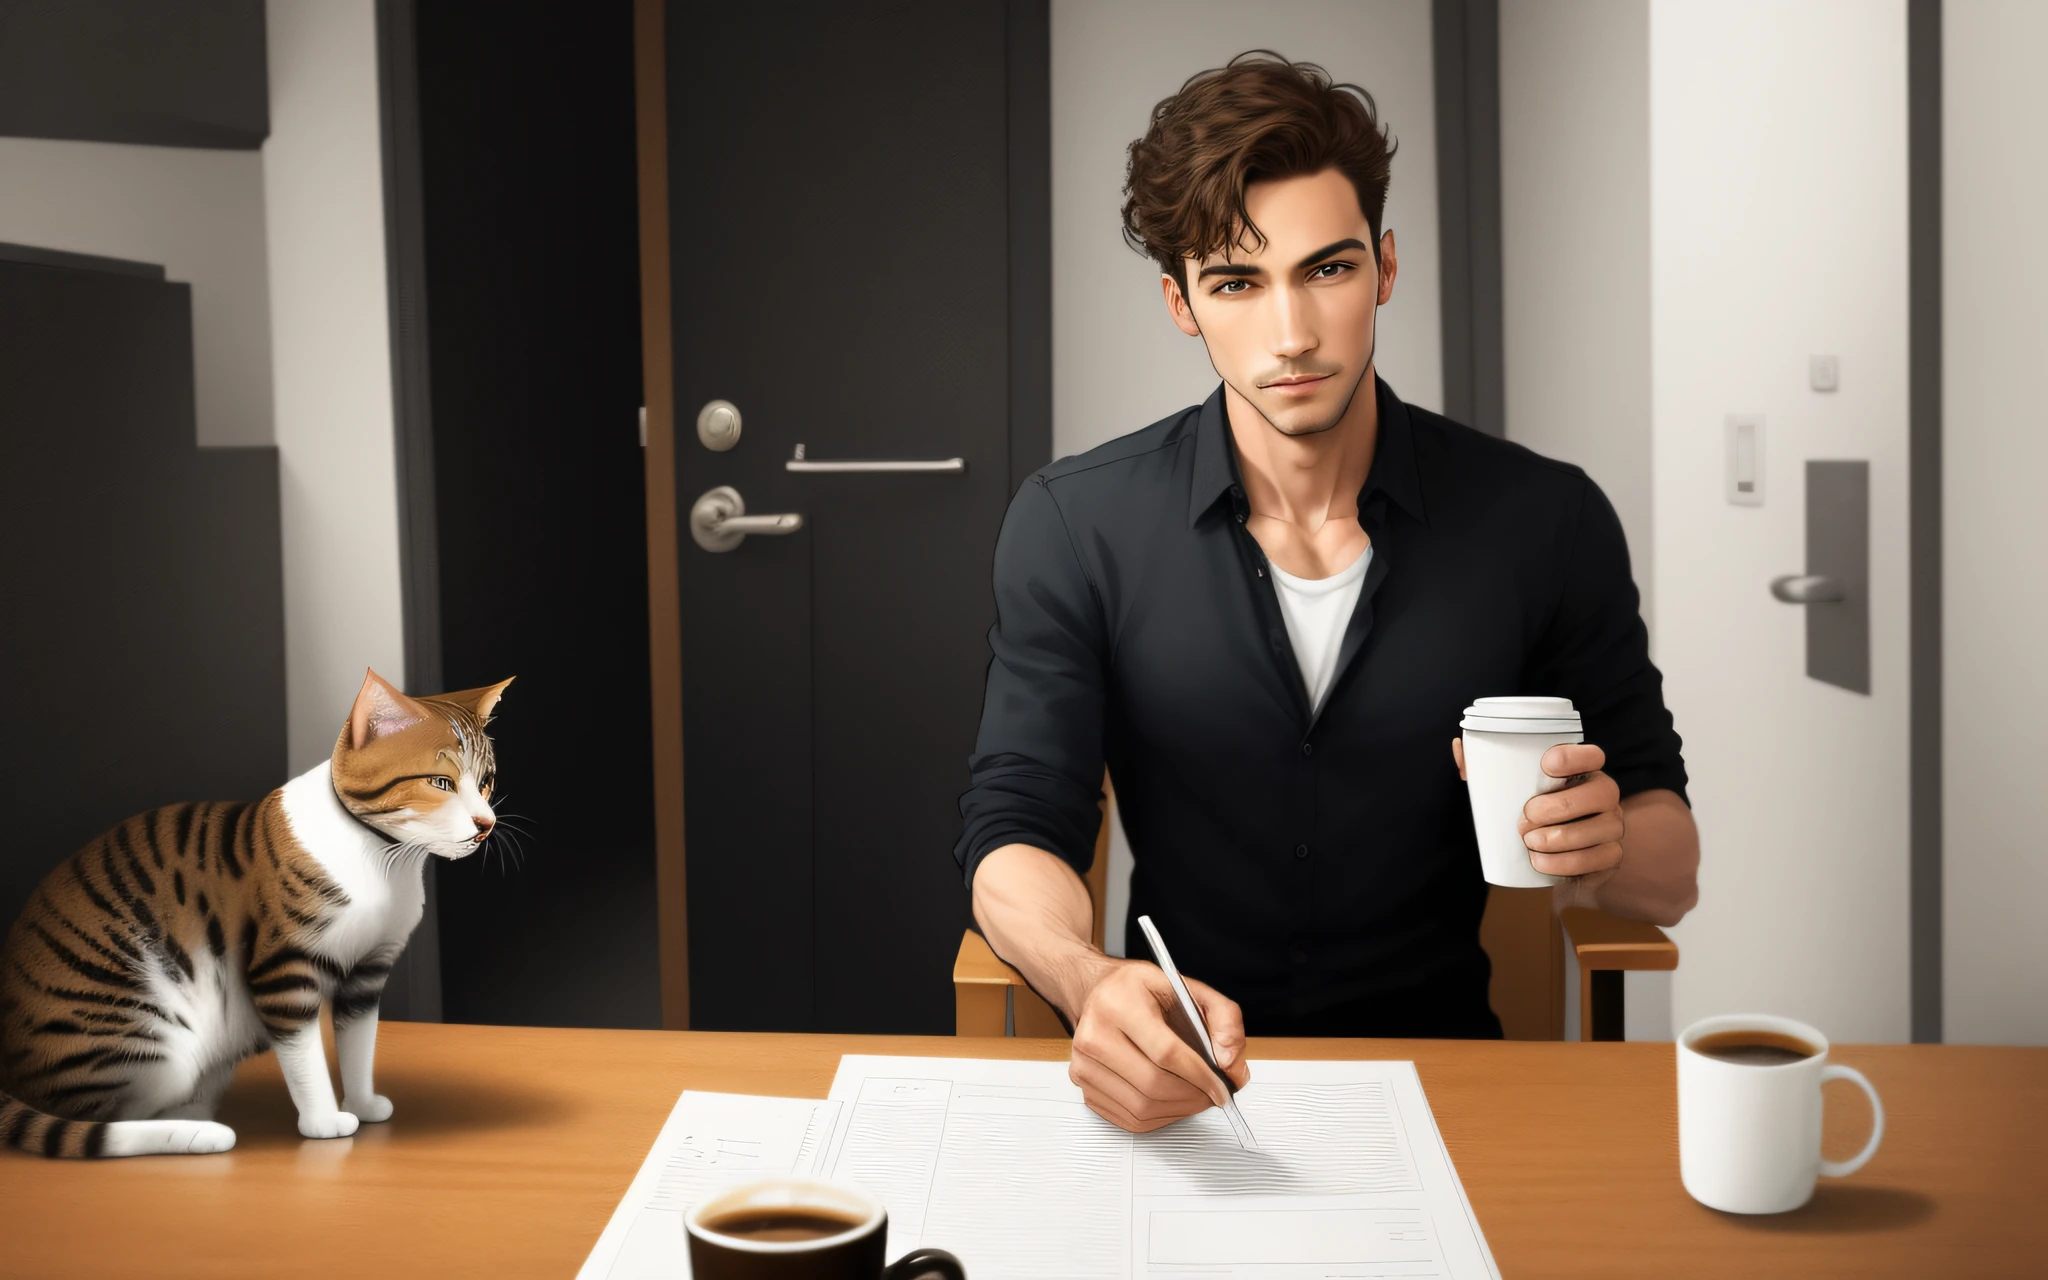 полнотелый мужчина, идущий прямо,  держа чашку кофе, кот следует в том же направлении, что и человек, мультяшный стиль,  просто человек. Детальное реалистичное реальное изображение.